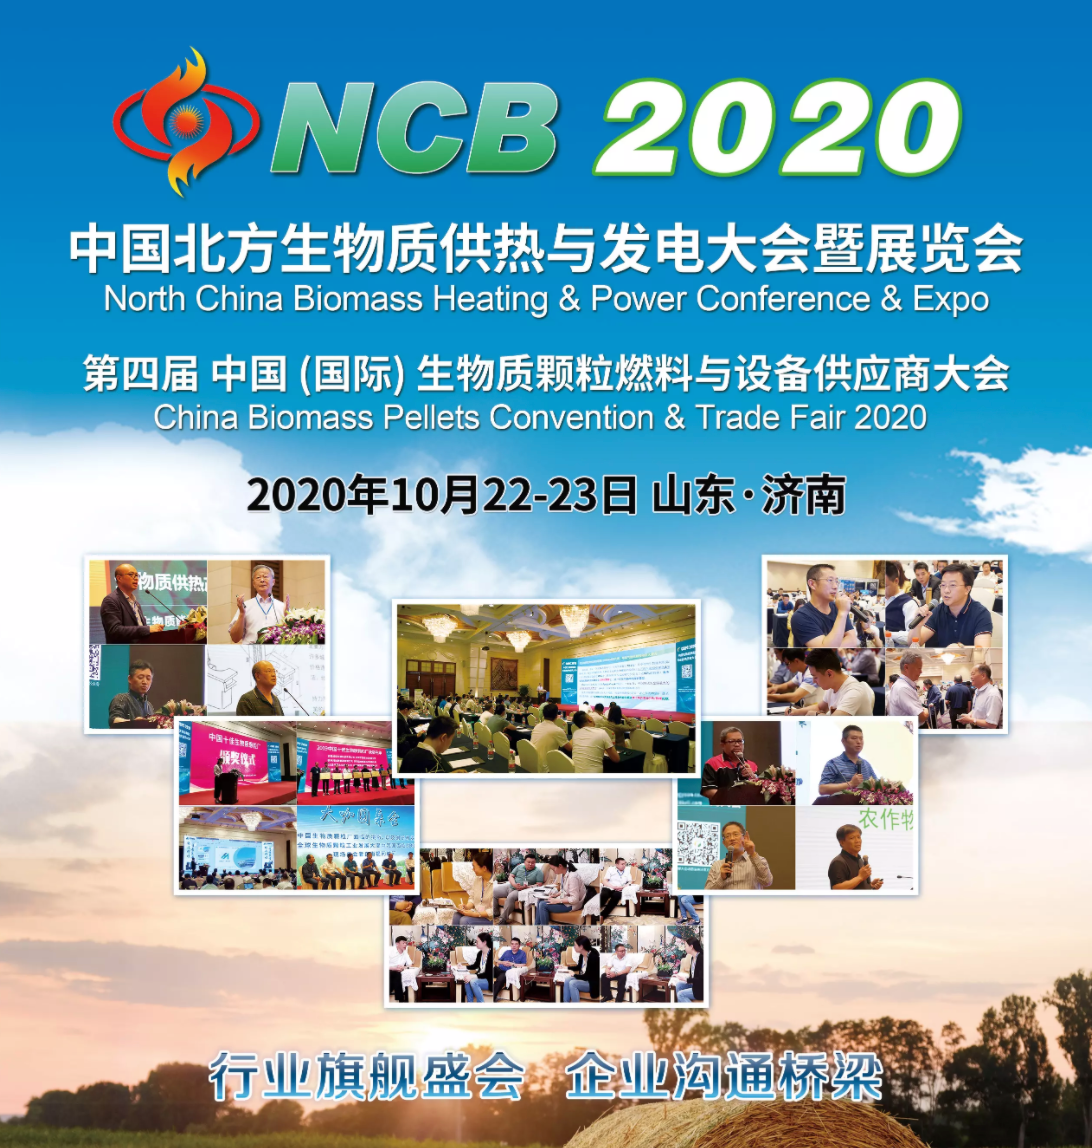 NCB 2020中国北方生物质供热与发电大会暨展览会